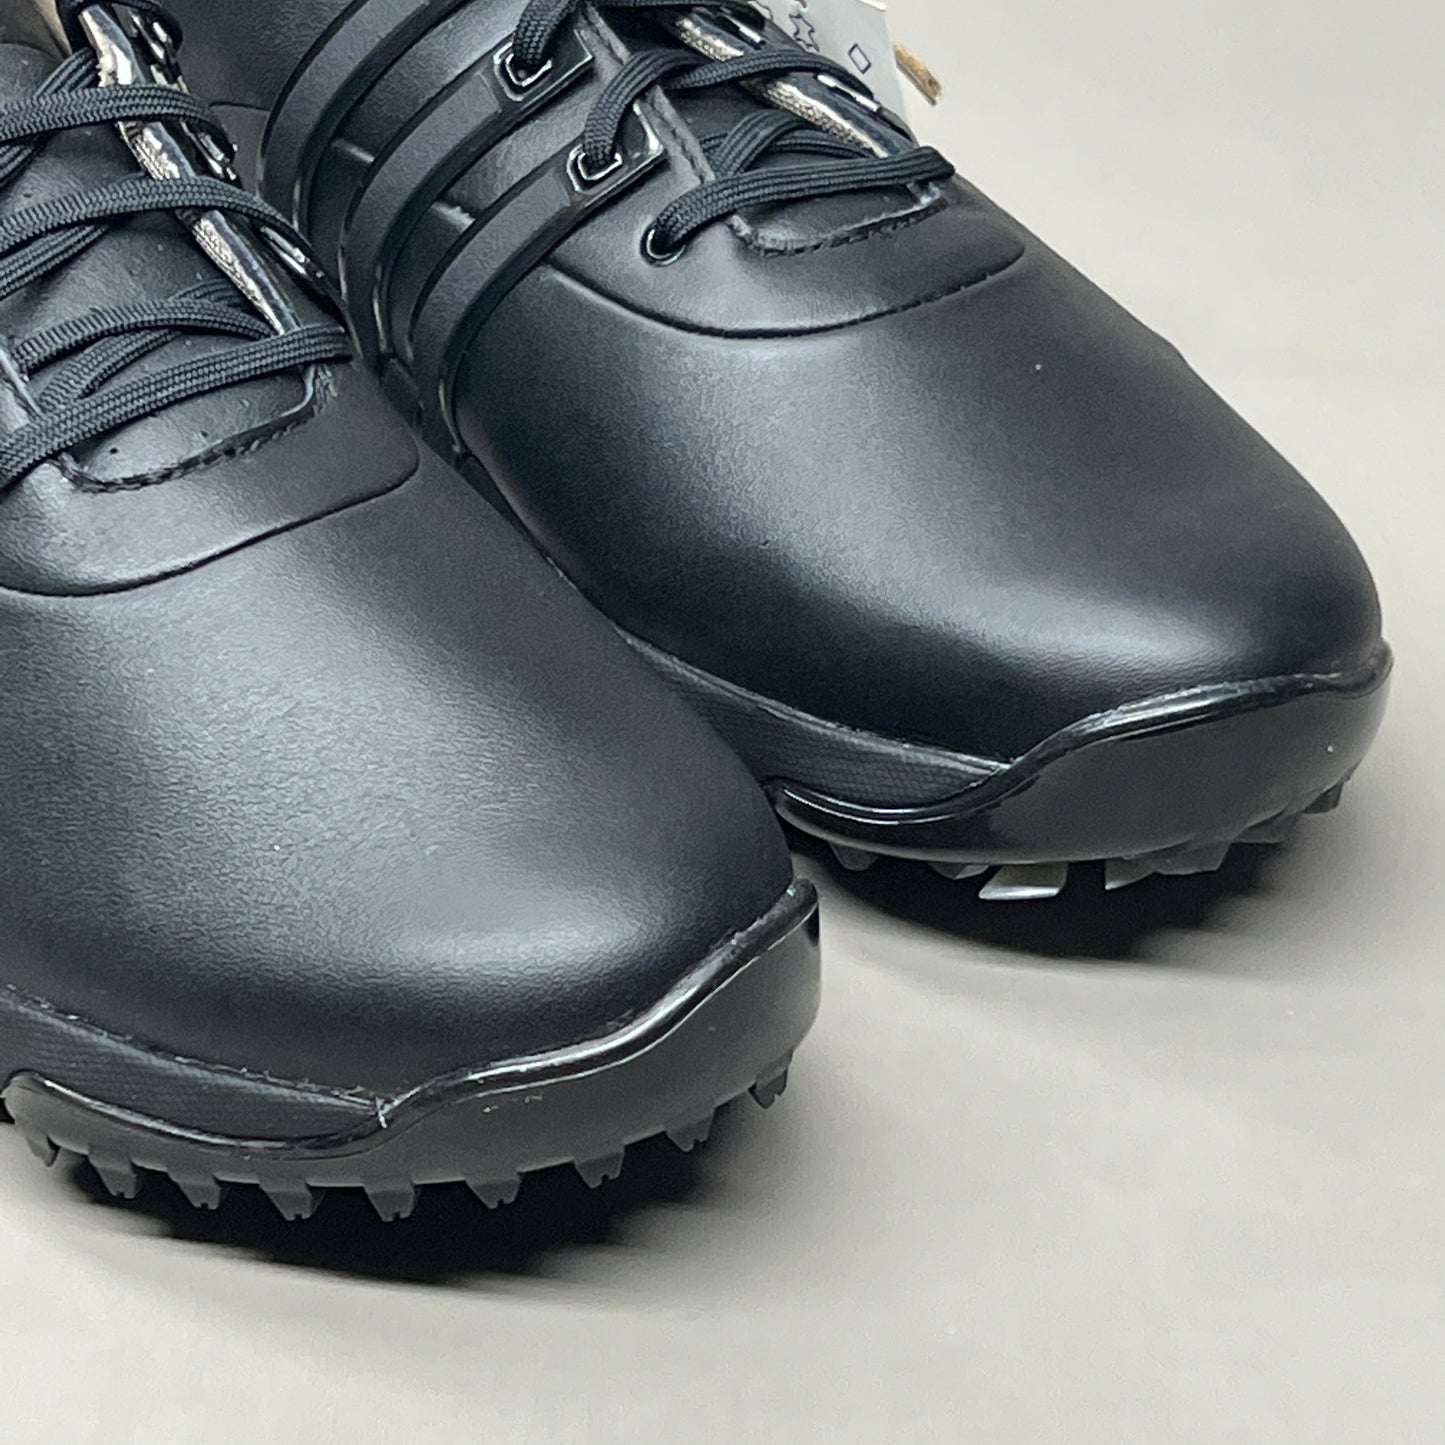 ADIDAS Golf Shoes TOUR360 22 Leather Men's Sz 9.5 Black / Iron Metallic GZ3158 (New)